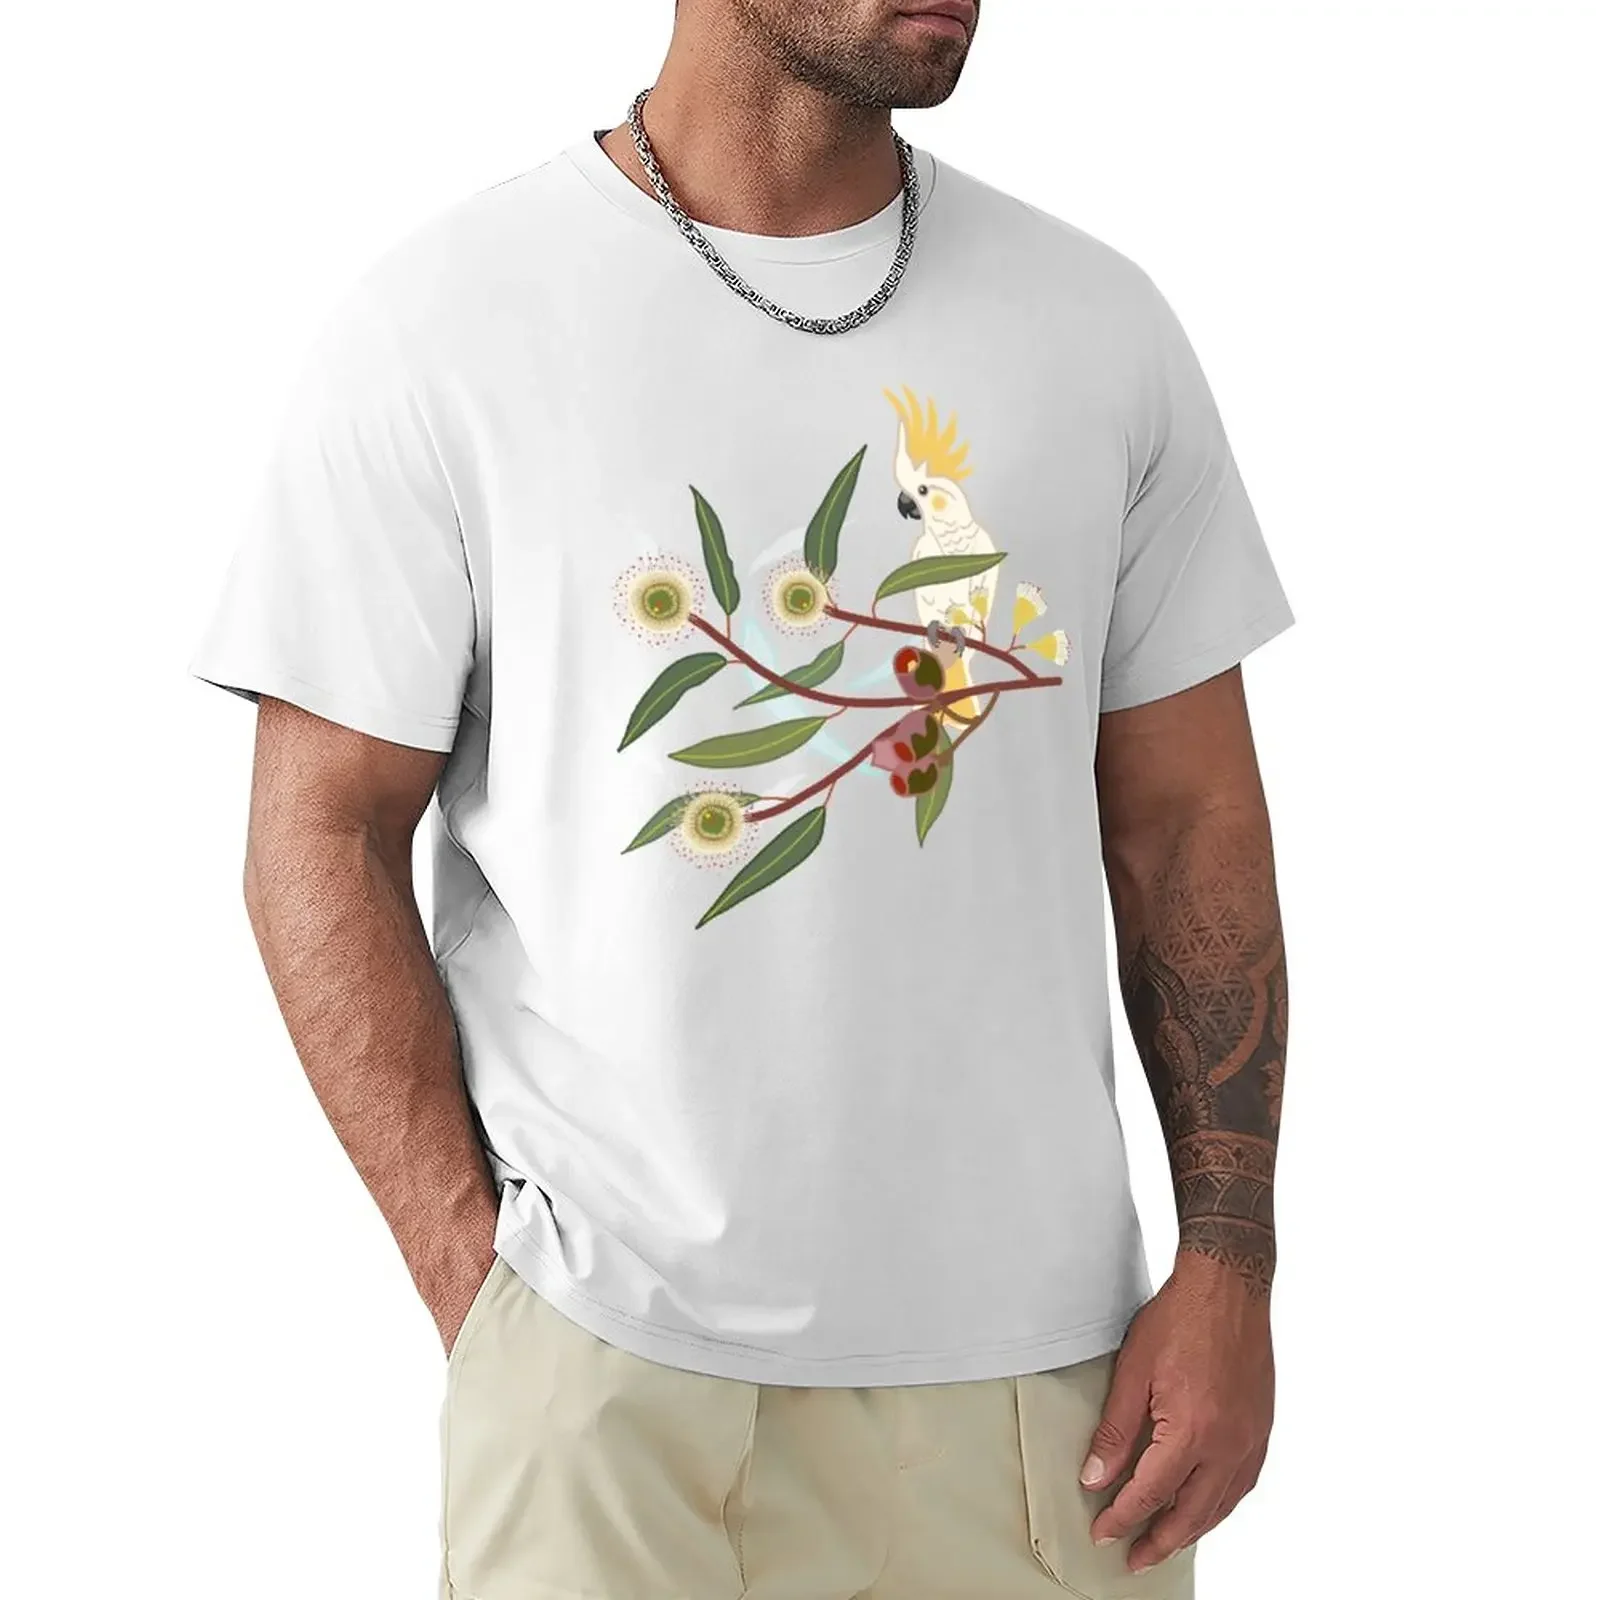 

Мужская футболка с серо-хохлатым Какаду